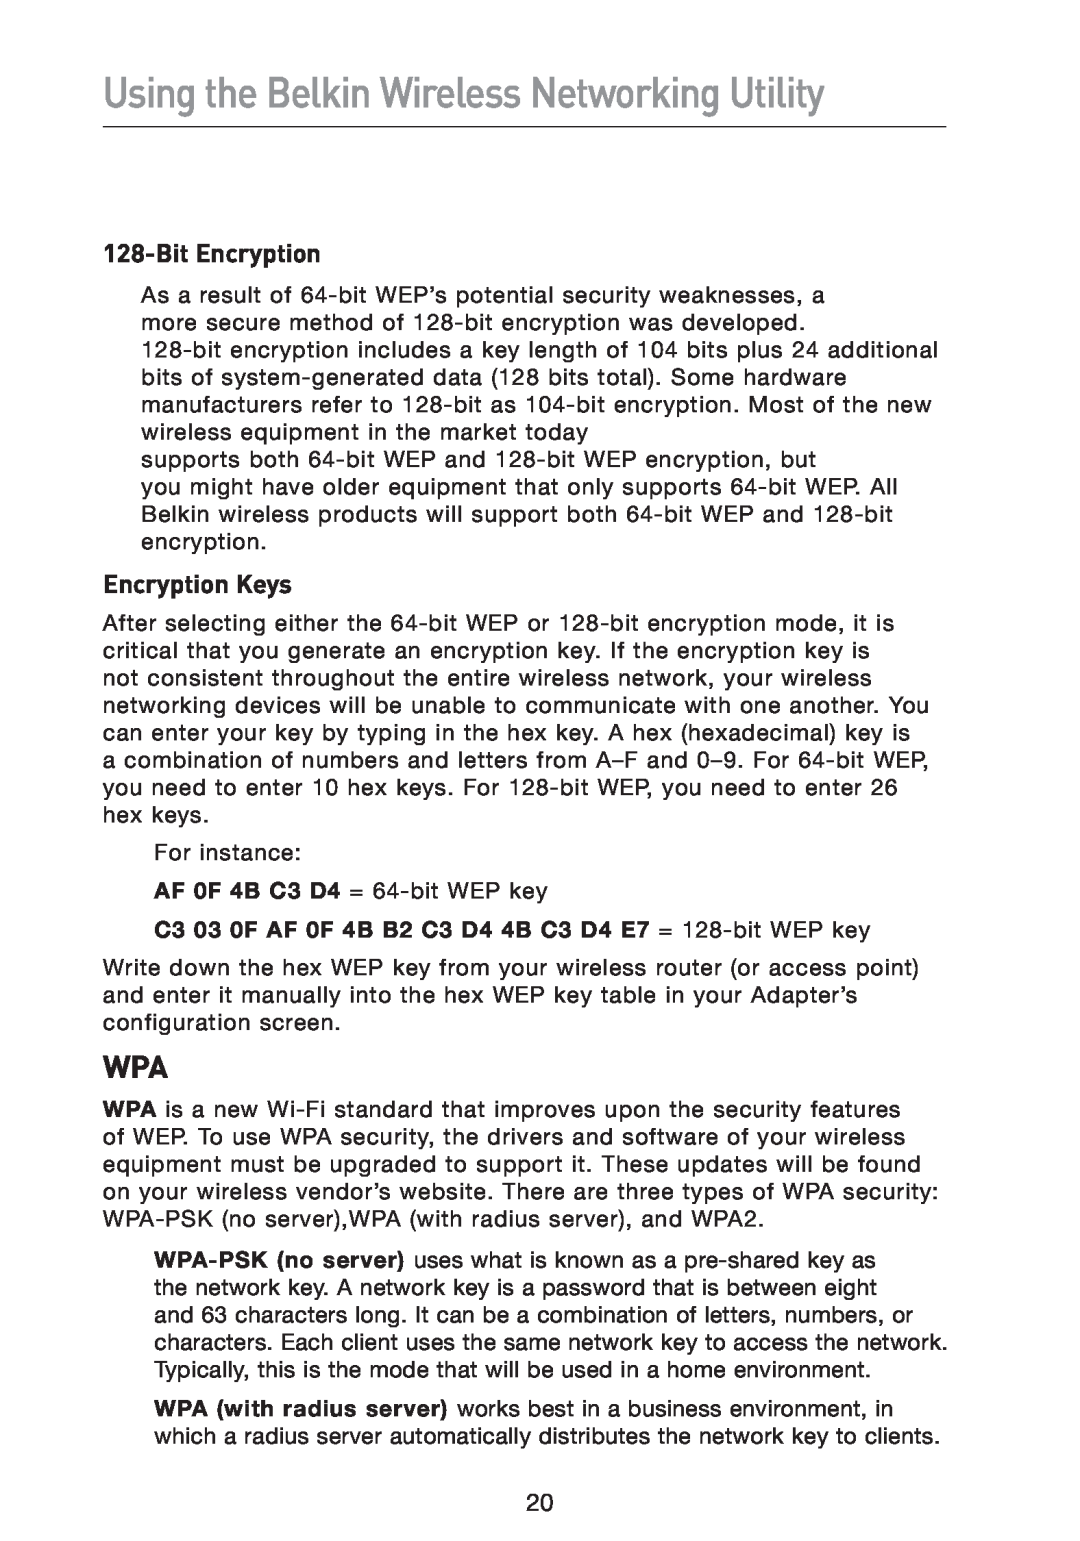 Belkin F5D9050 user manual Bit Encryption, Encryption Keys, Using the Belkin Wireless Networking Utility 